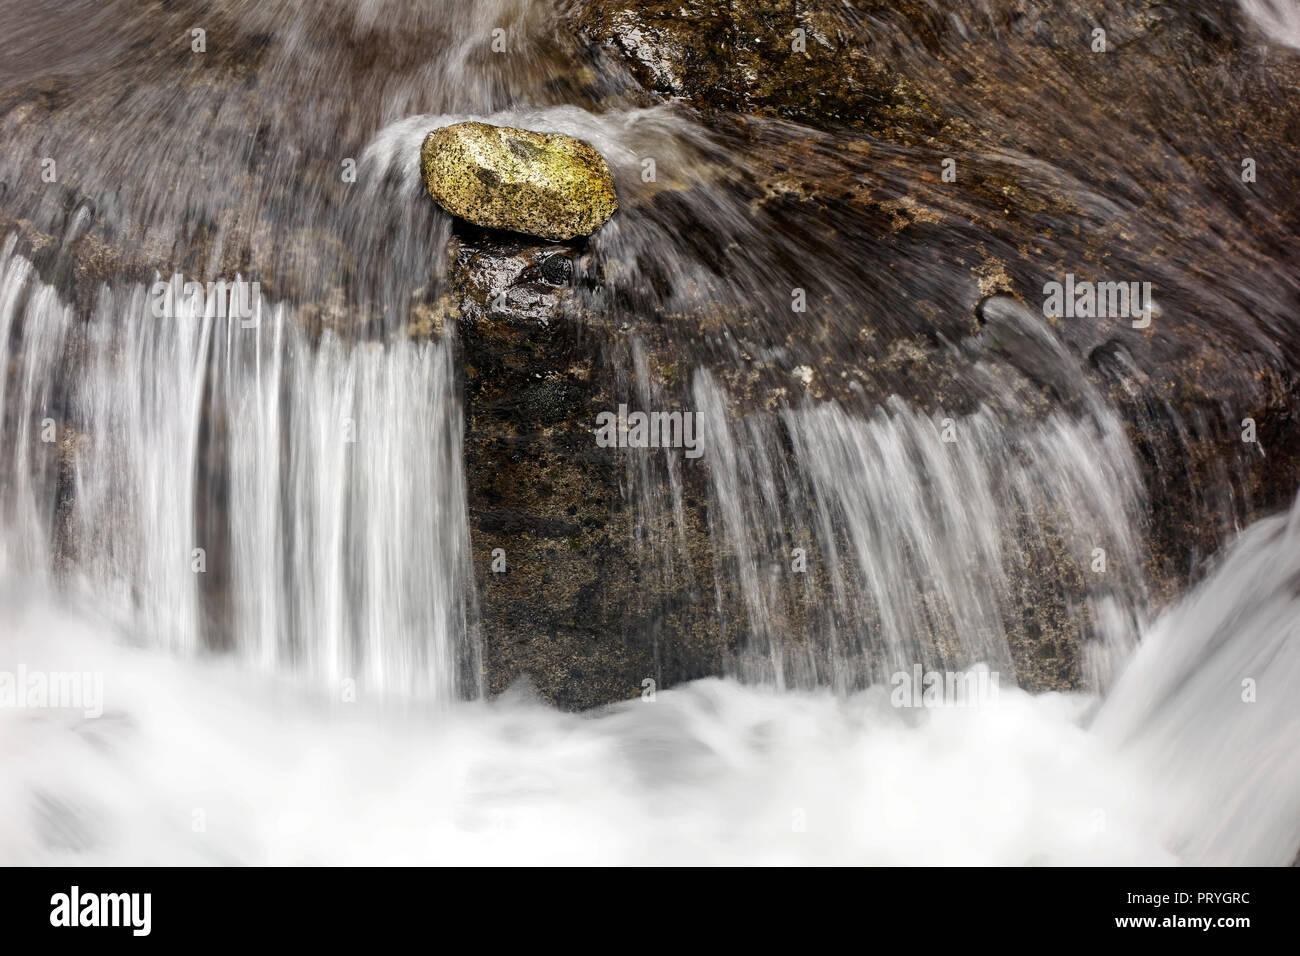 La pietra si trova di fronte a una piccola cascata in corrente, Ruscello di montagna, simbologia, costanza tutti contro uno Foto Stock